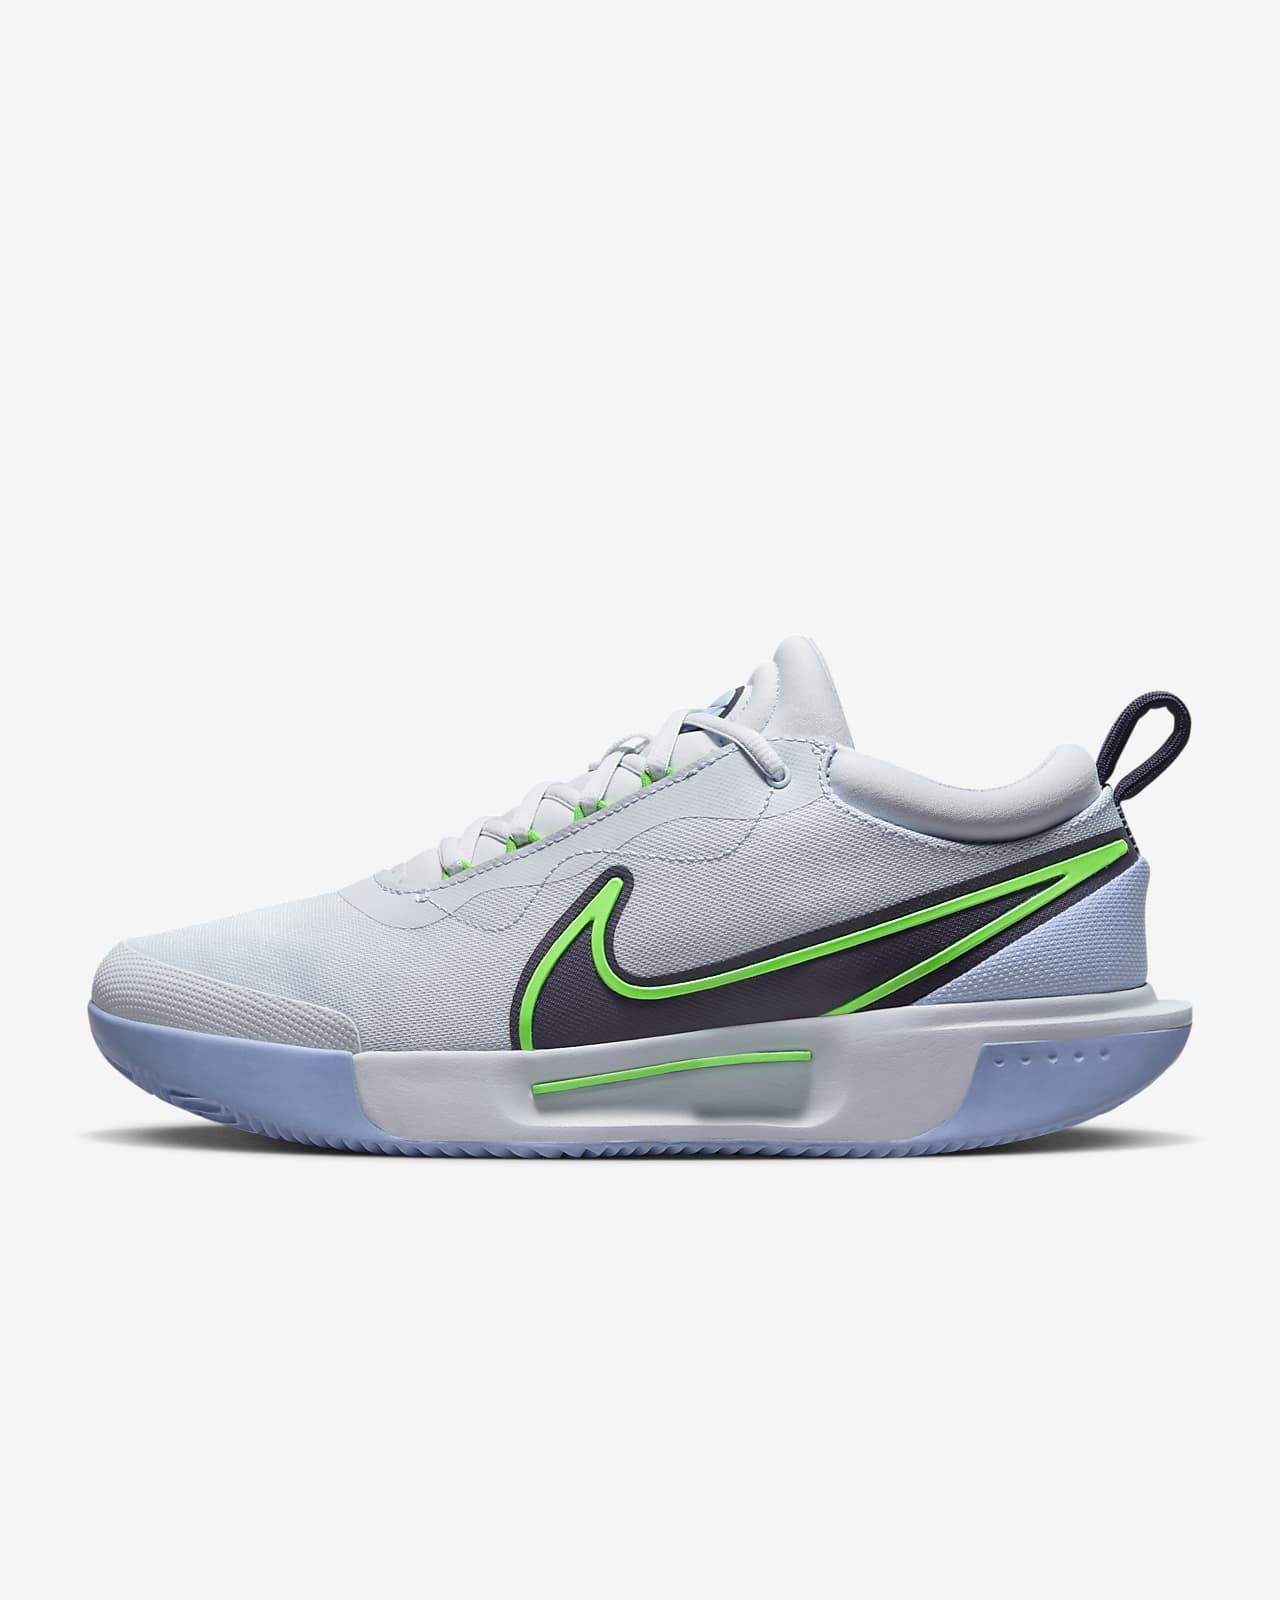 NikeCourt Air Zoom Pro Zapatillas de tenis para batida - Hombre.